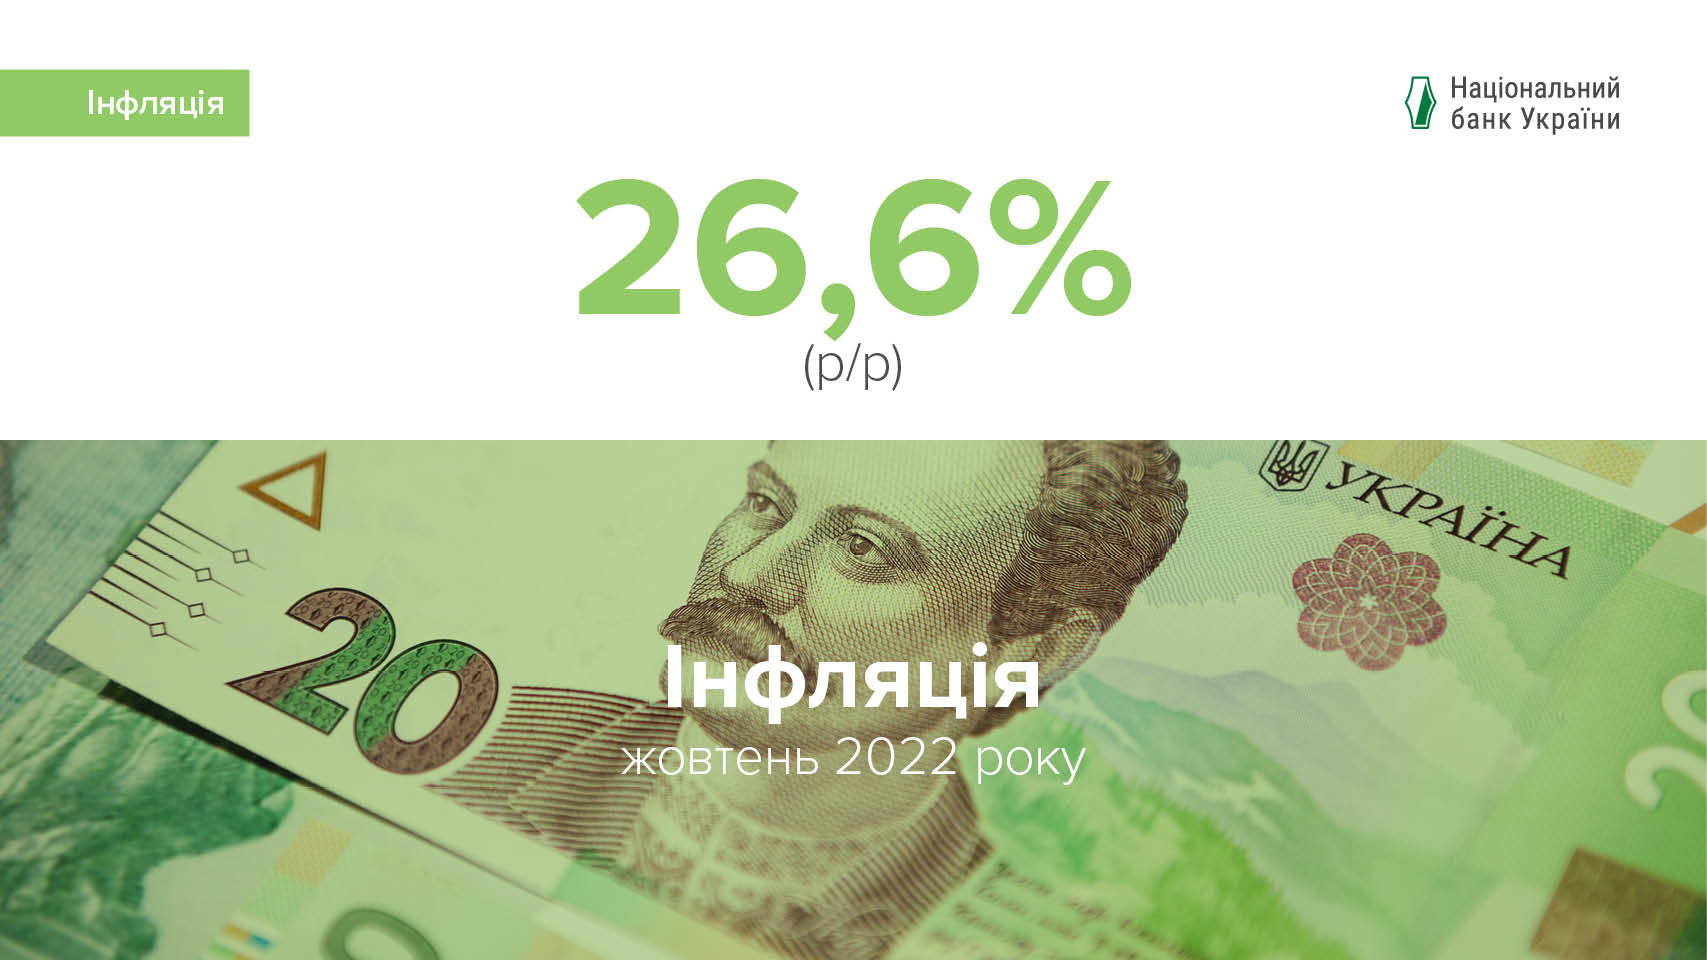 Коментар Національного банку щодо рівня інфляції у жовтні 2022 року